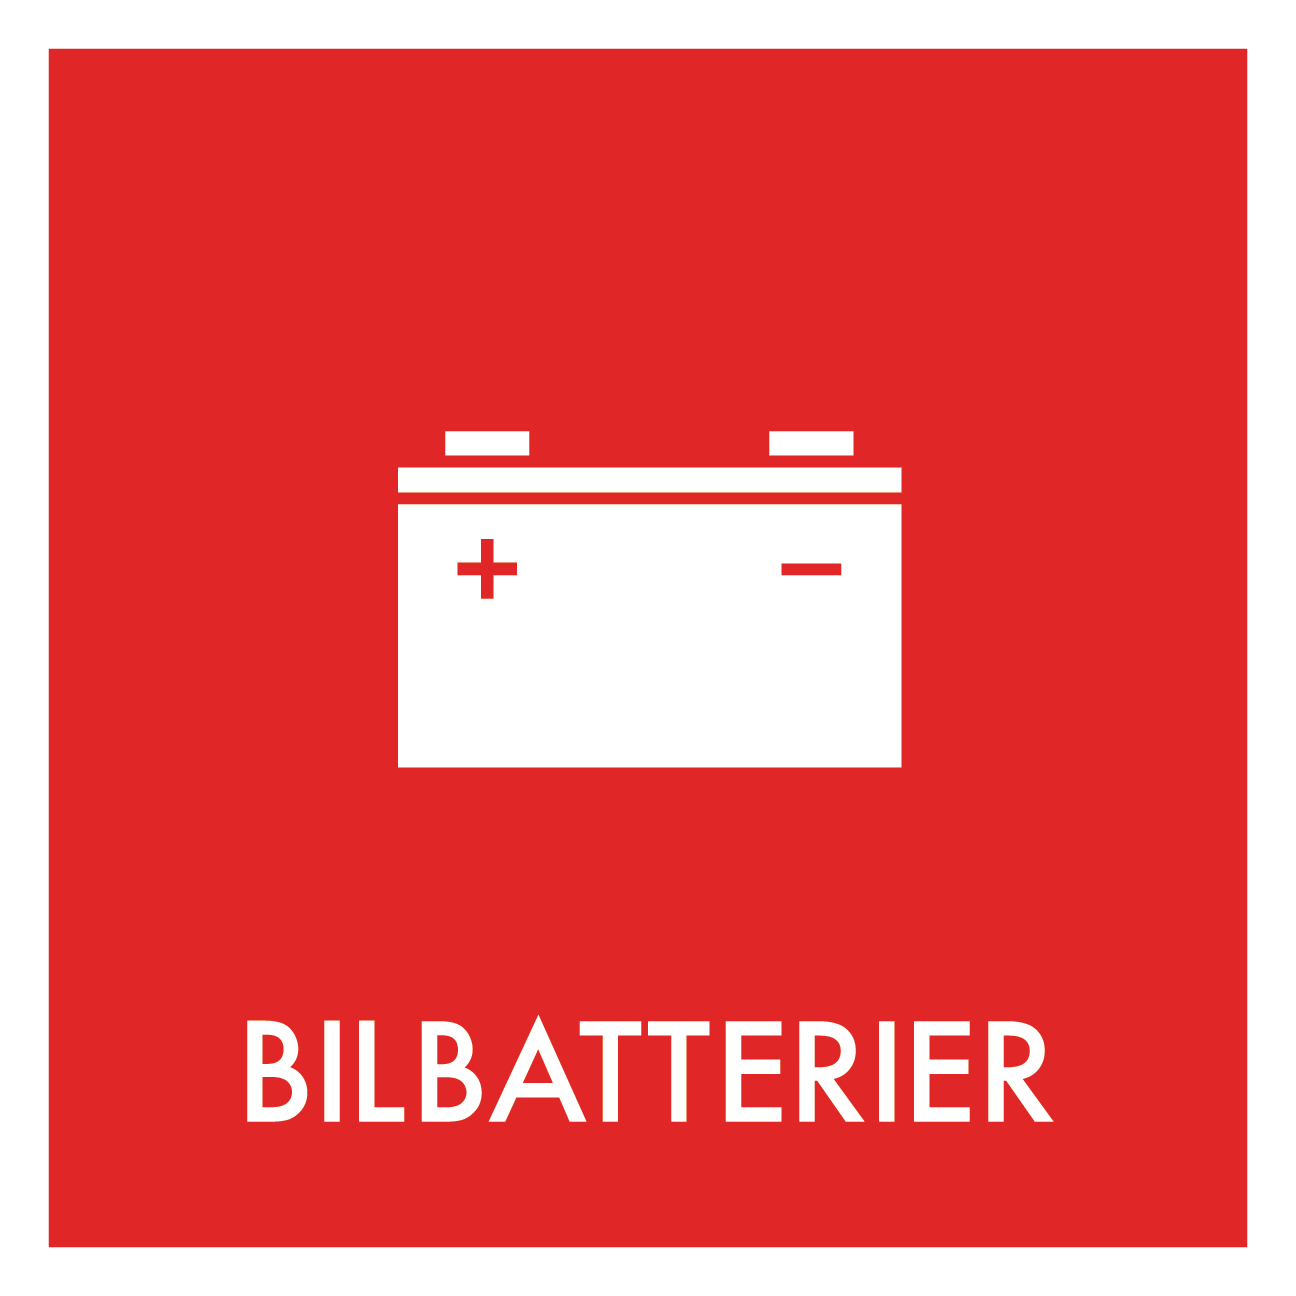 Bilbatterier affald skilt - Dansk Affaldssortering